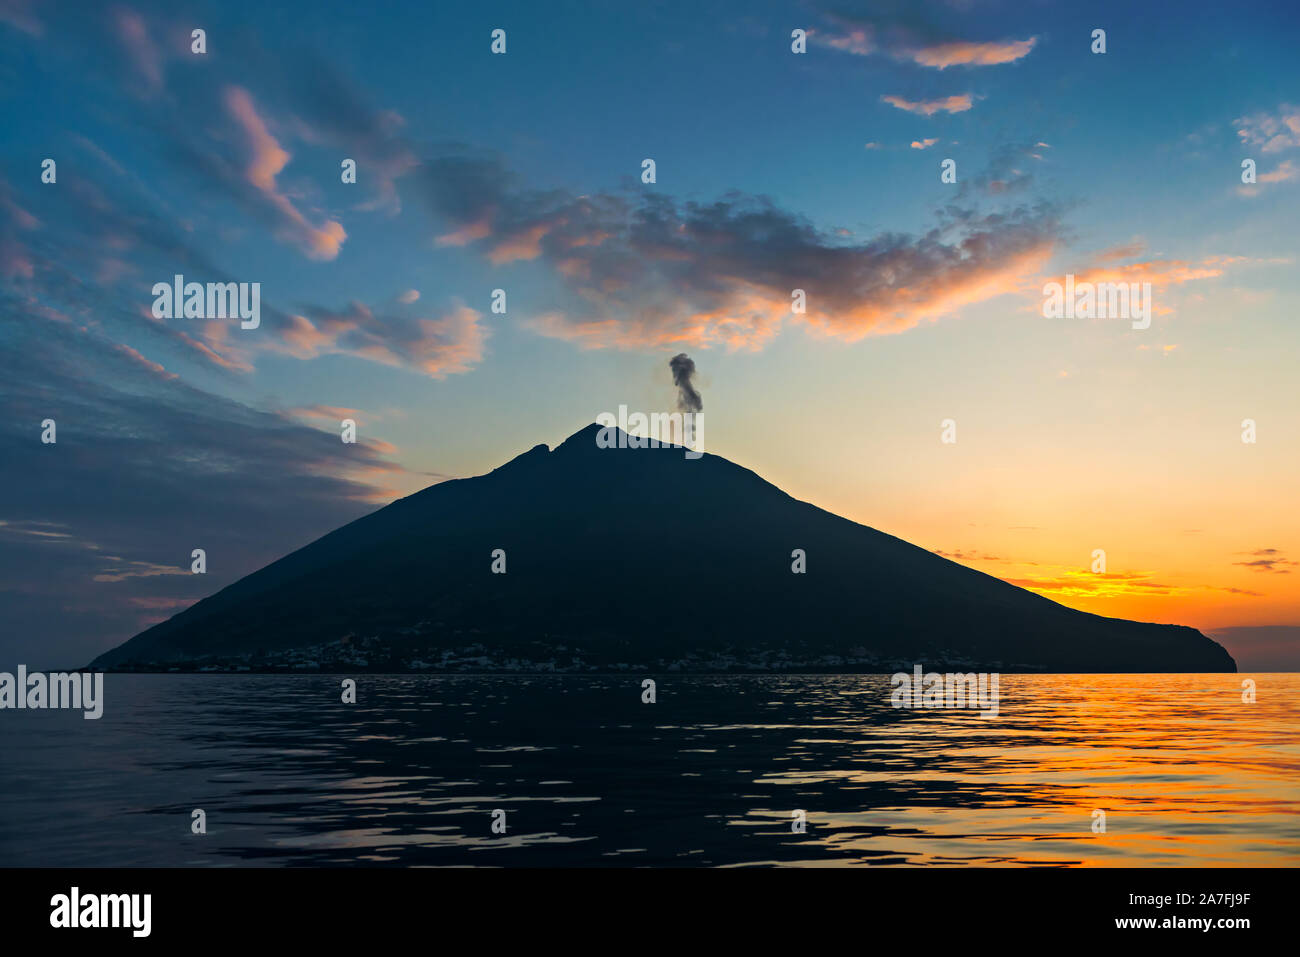 Vulcano Stromboli island silhouette al tramonto, mare calmo, blu e arancione torbida del cielo della sera, isole Eolie, Sicilia, Italia Foto Stock